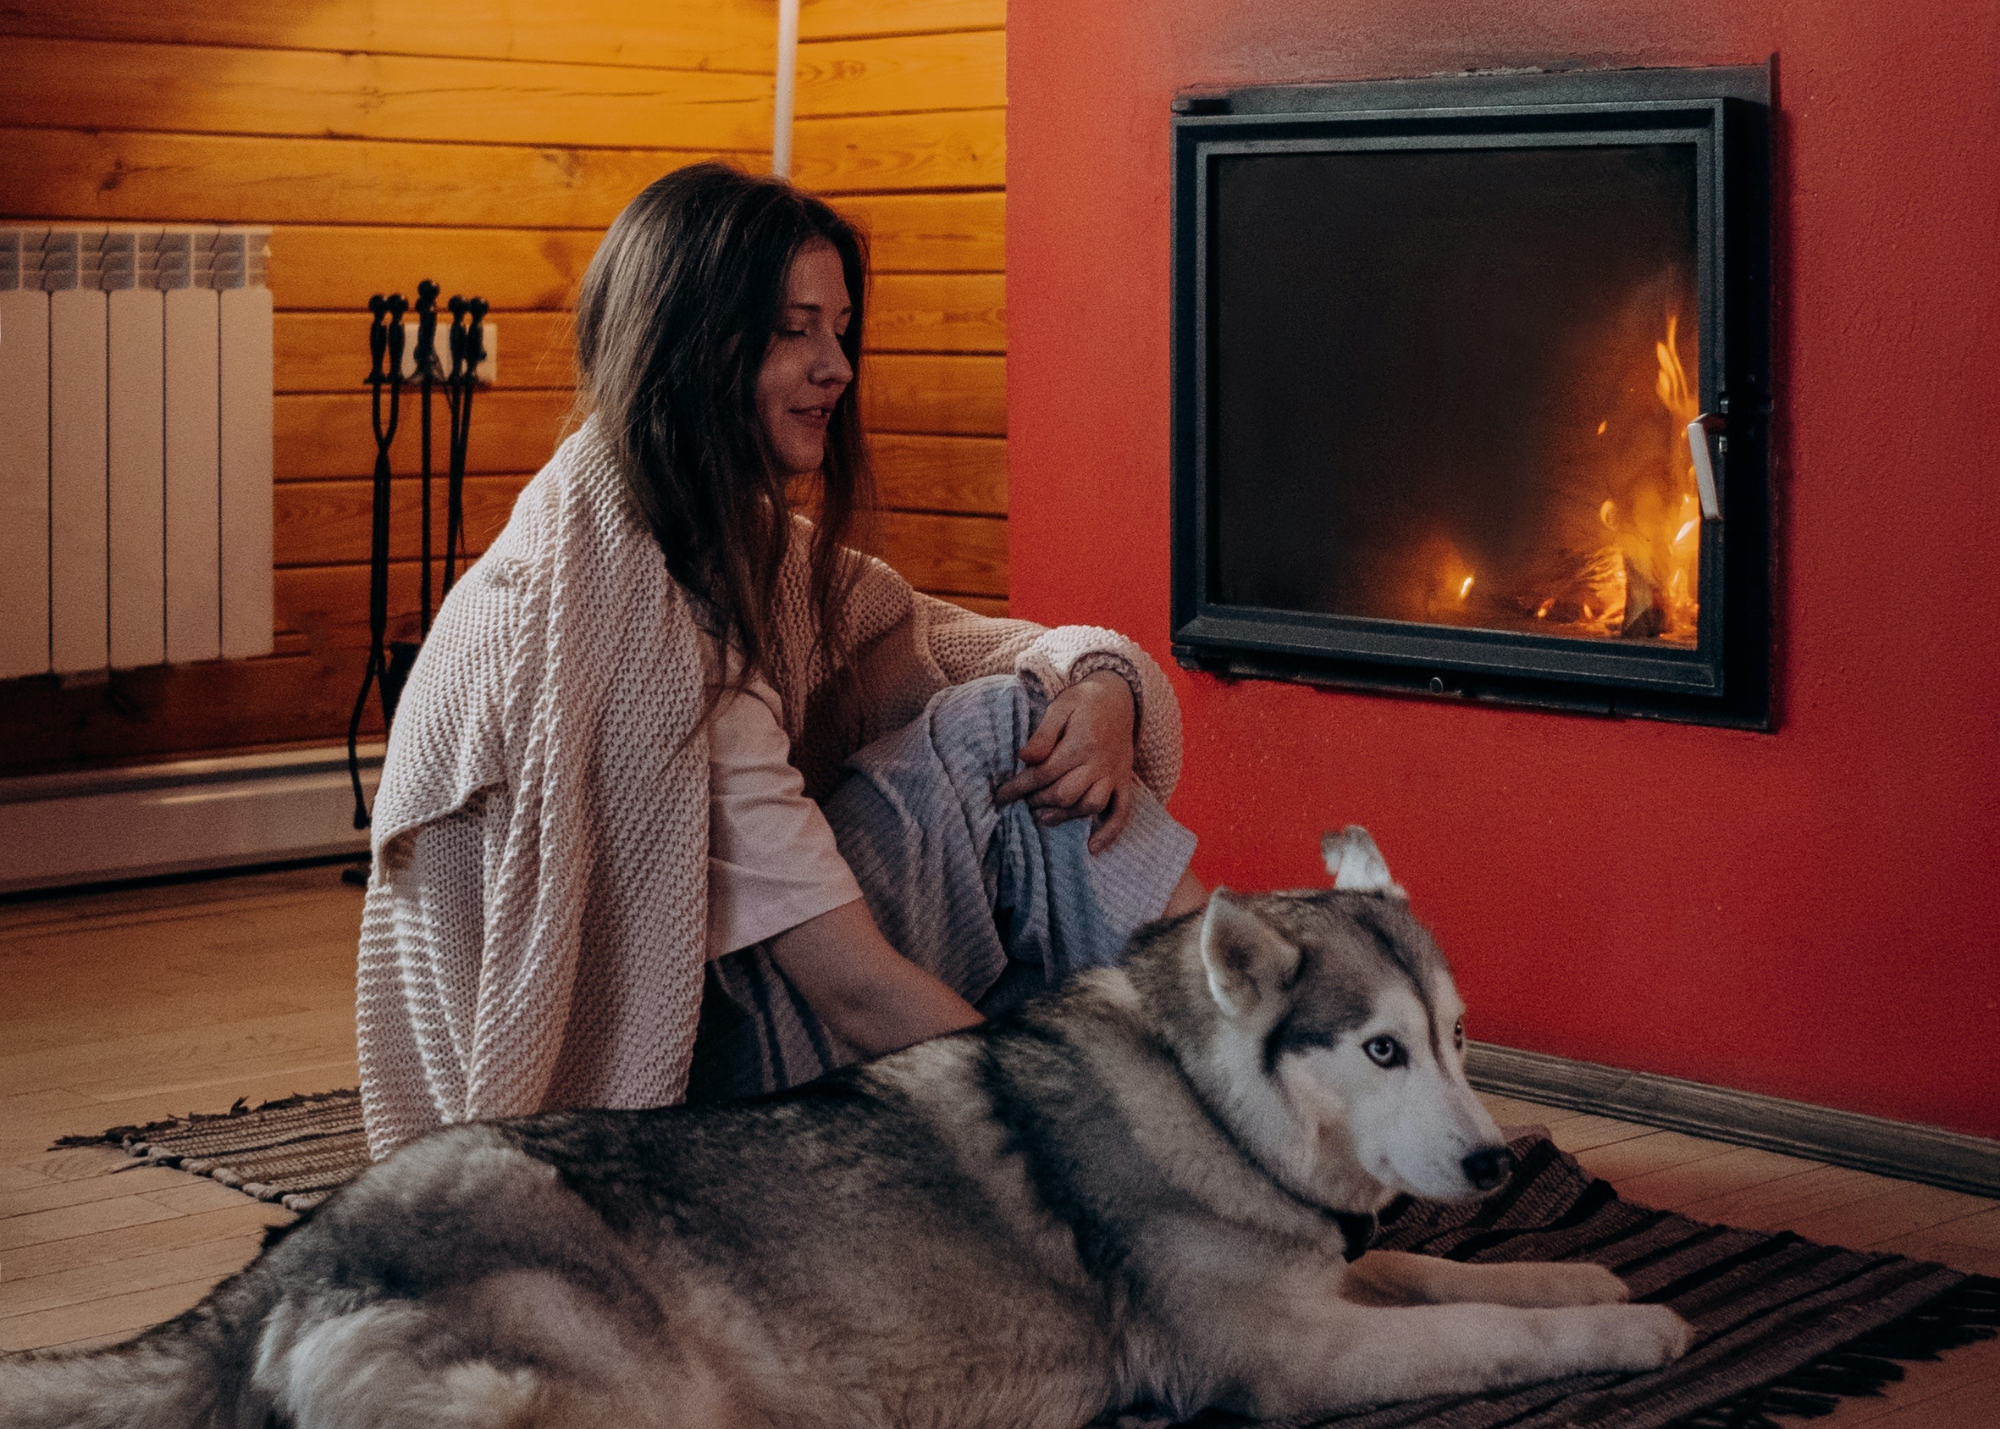 Una bonita chimenea, es algo que nos transmite bienestar, confort y calidez al ambiente. Con un poco de leña o pellets puedes crear un fuego muy acogedor, que calienta todo tu hogar.